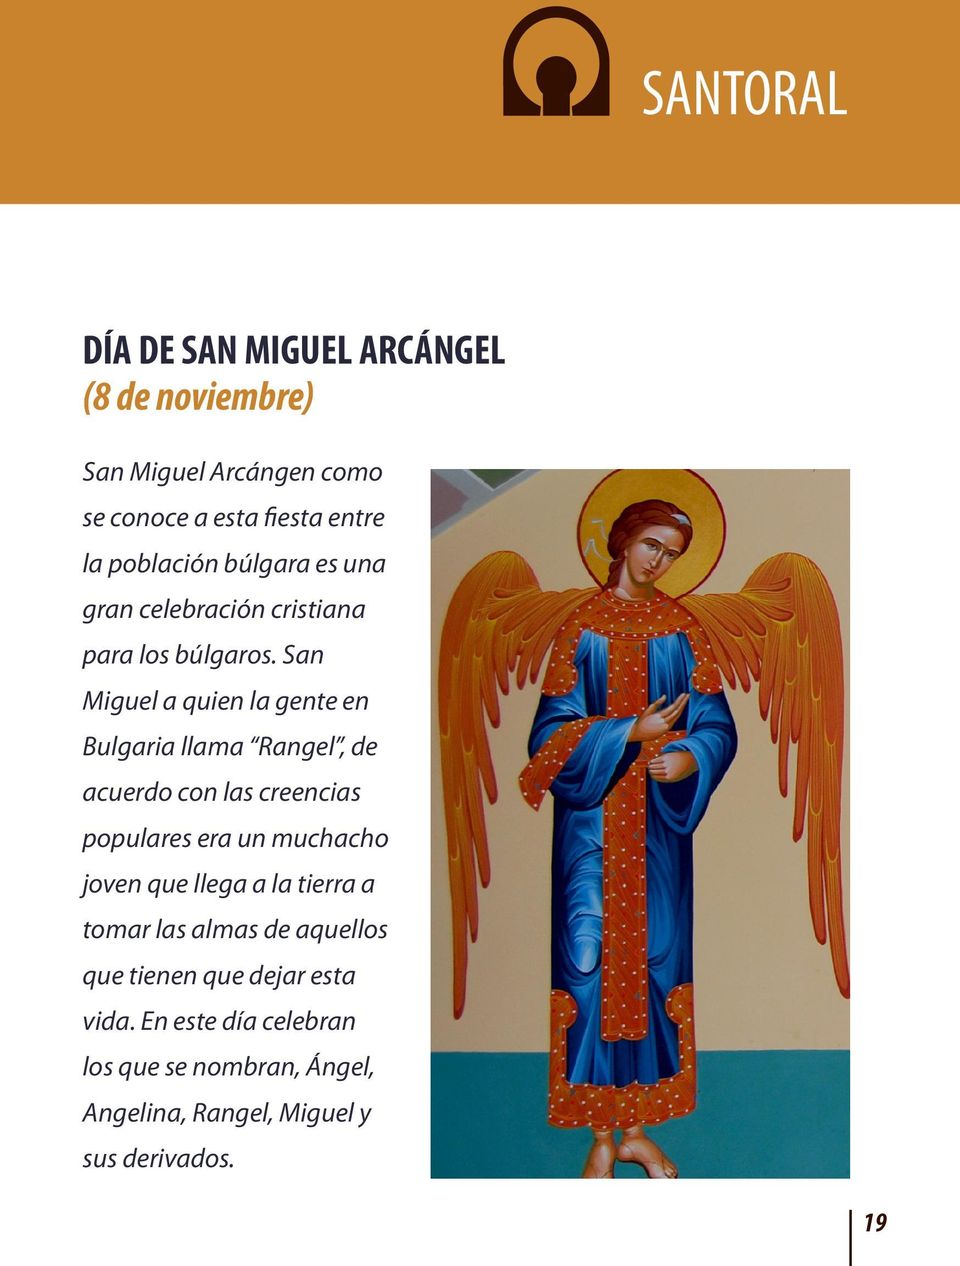 San Miguel a quien la gente en Bulgaria llama Rangel, de acuerdo con las creencias populares era un muchacho joven que